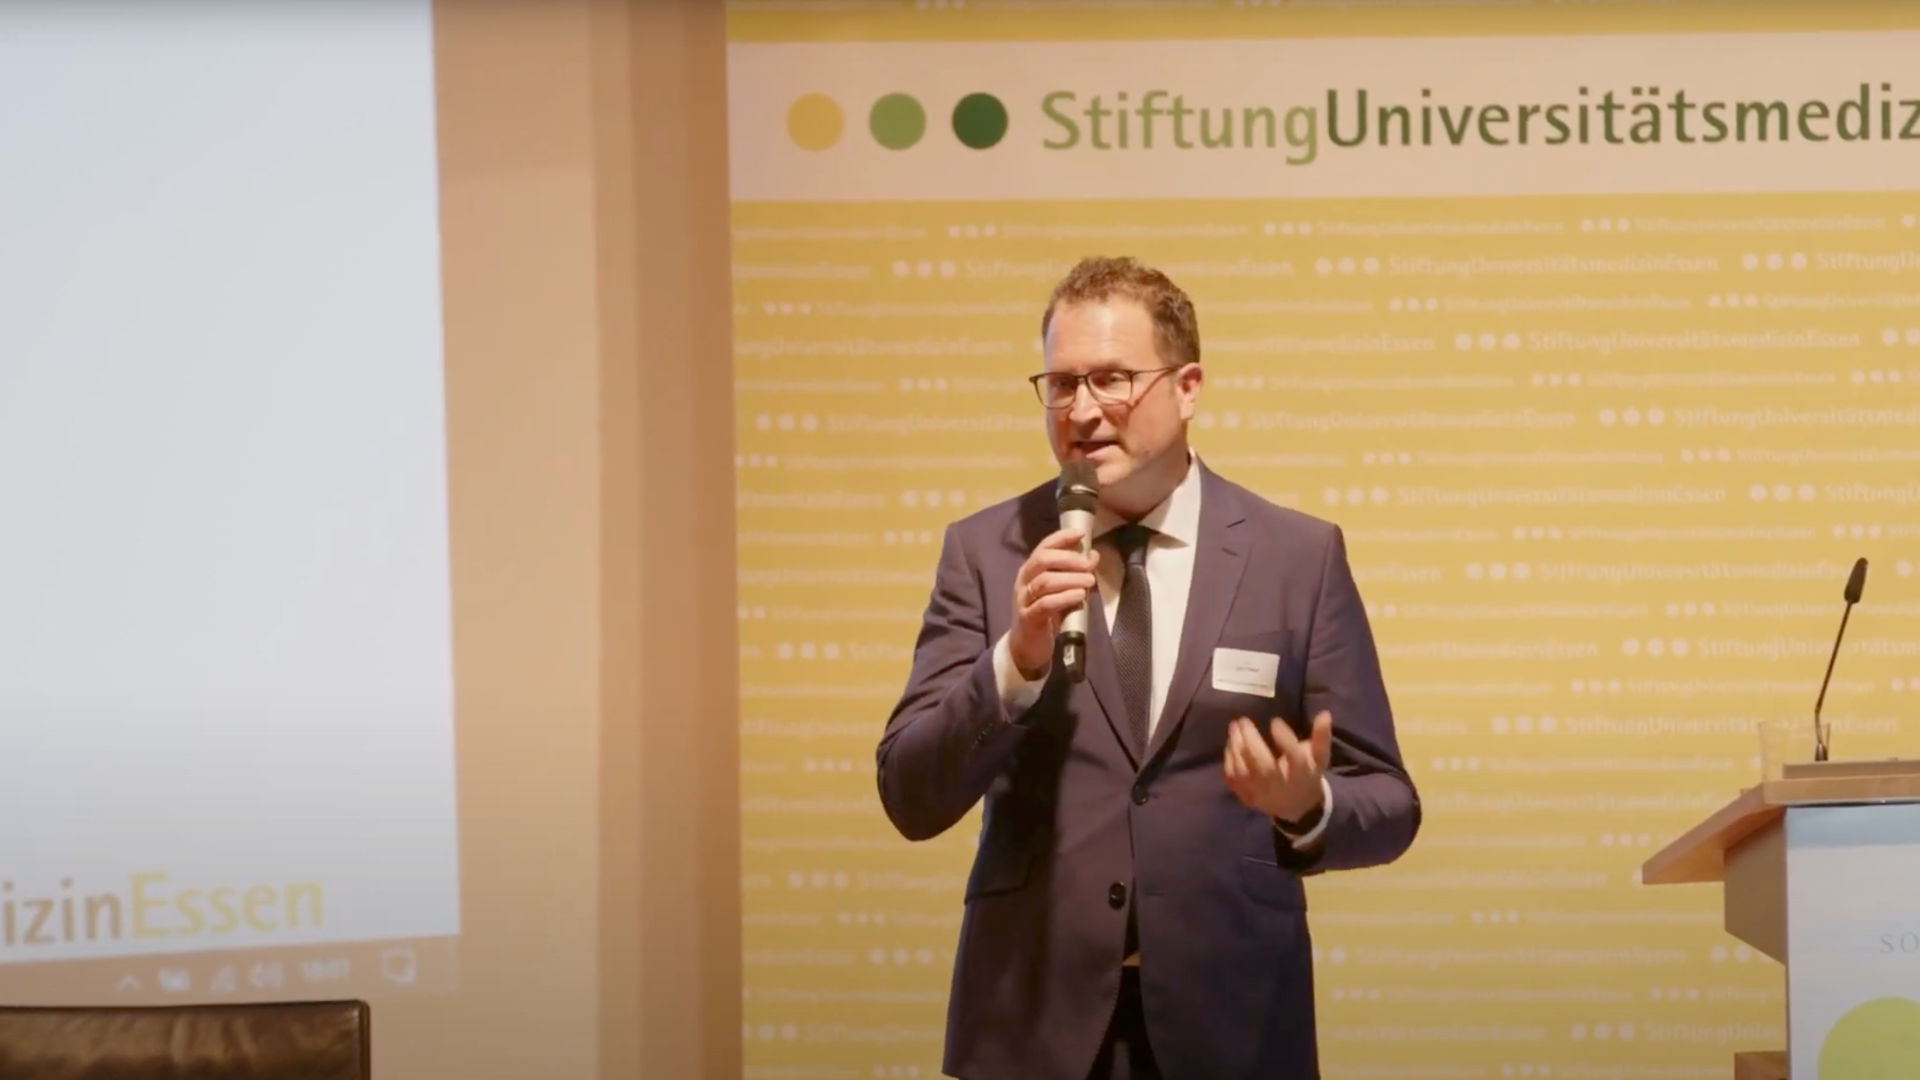 Live- Stream Stiftung Universitätsmedizin Essen